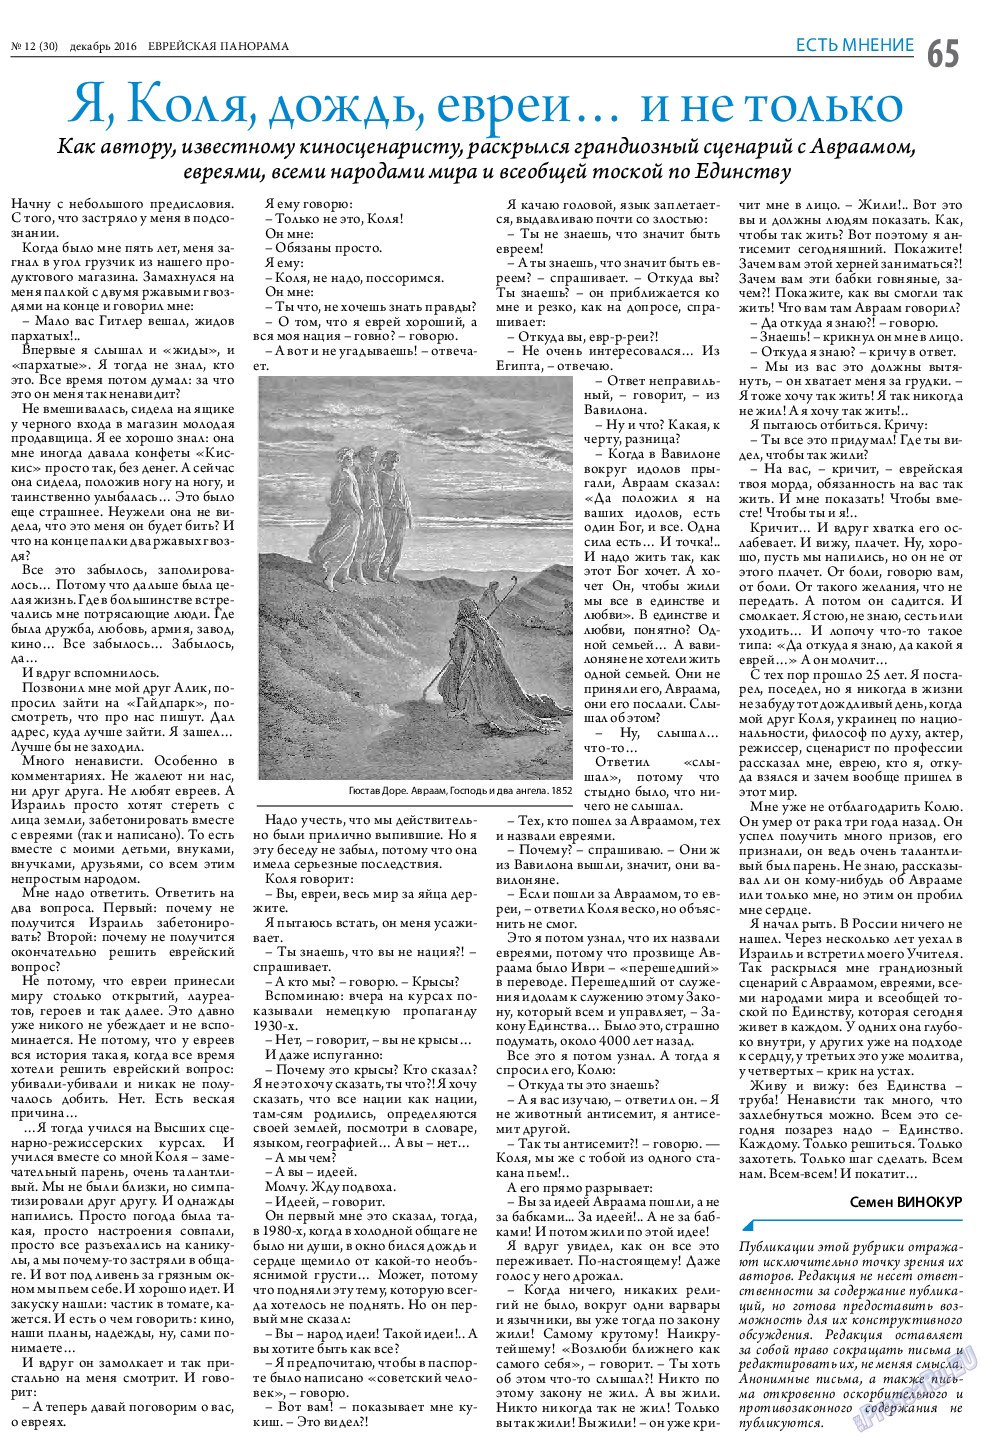 Еврейская панорама (газета). 2016 год, номер 12, стр. 65